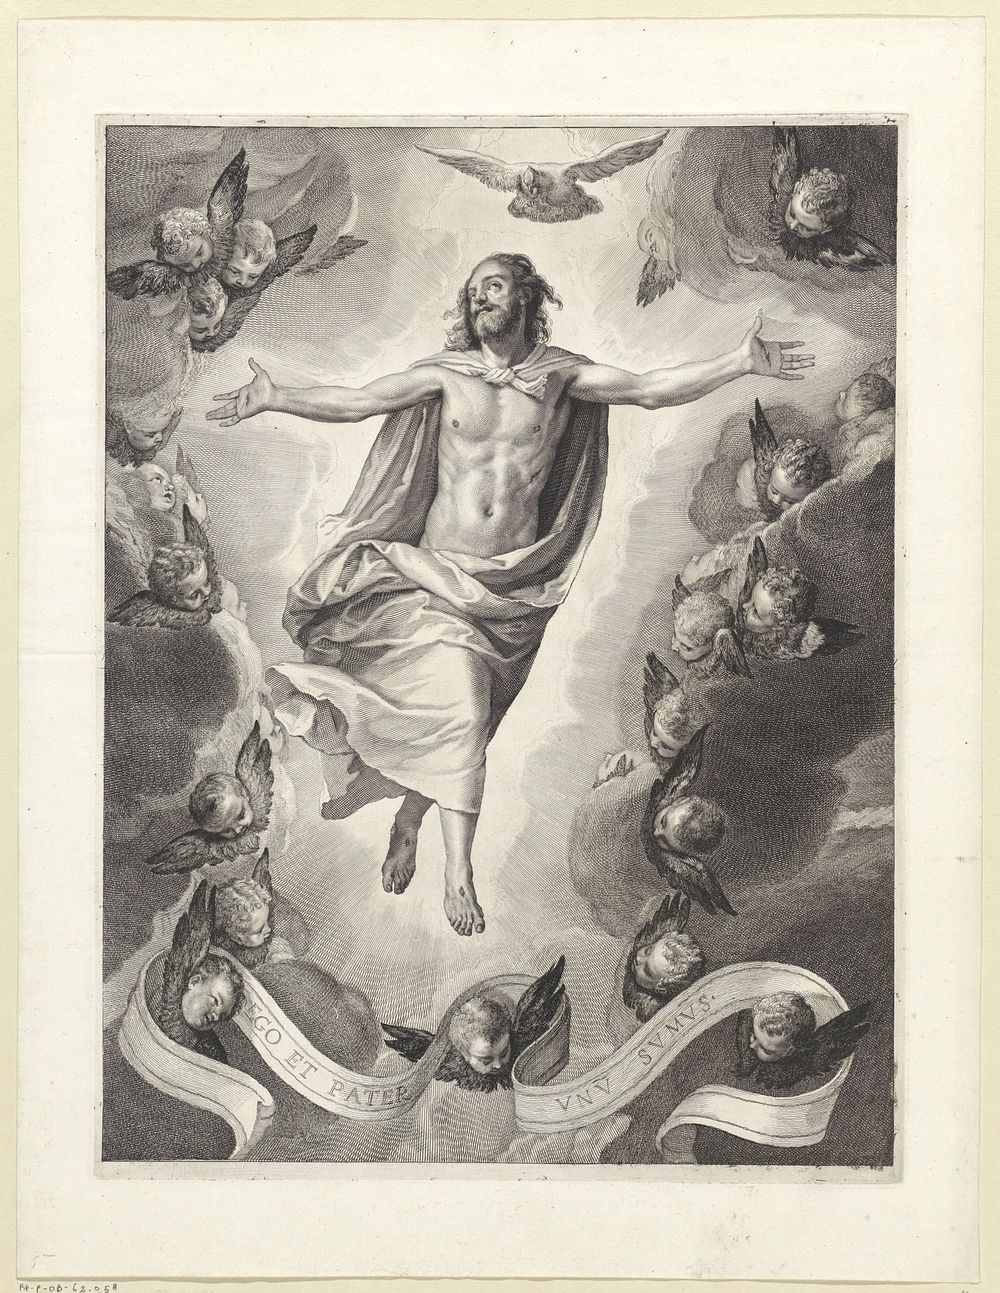 Hemelvaart van Christus (1638 - 1658) by Cornelis Visscher II and Paolo Veronese